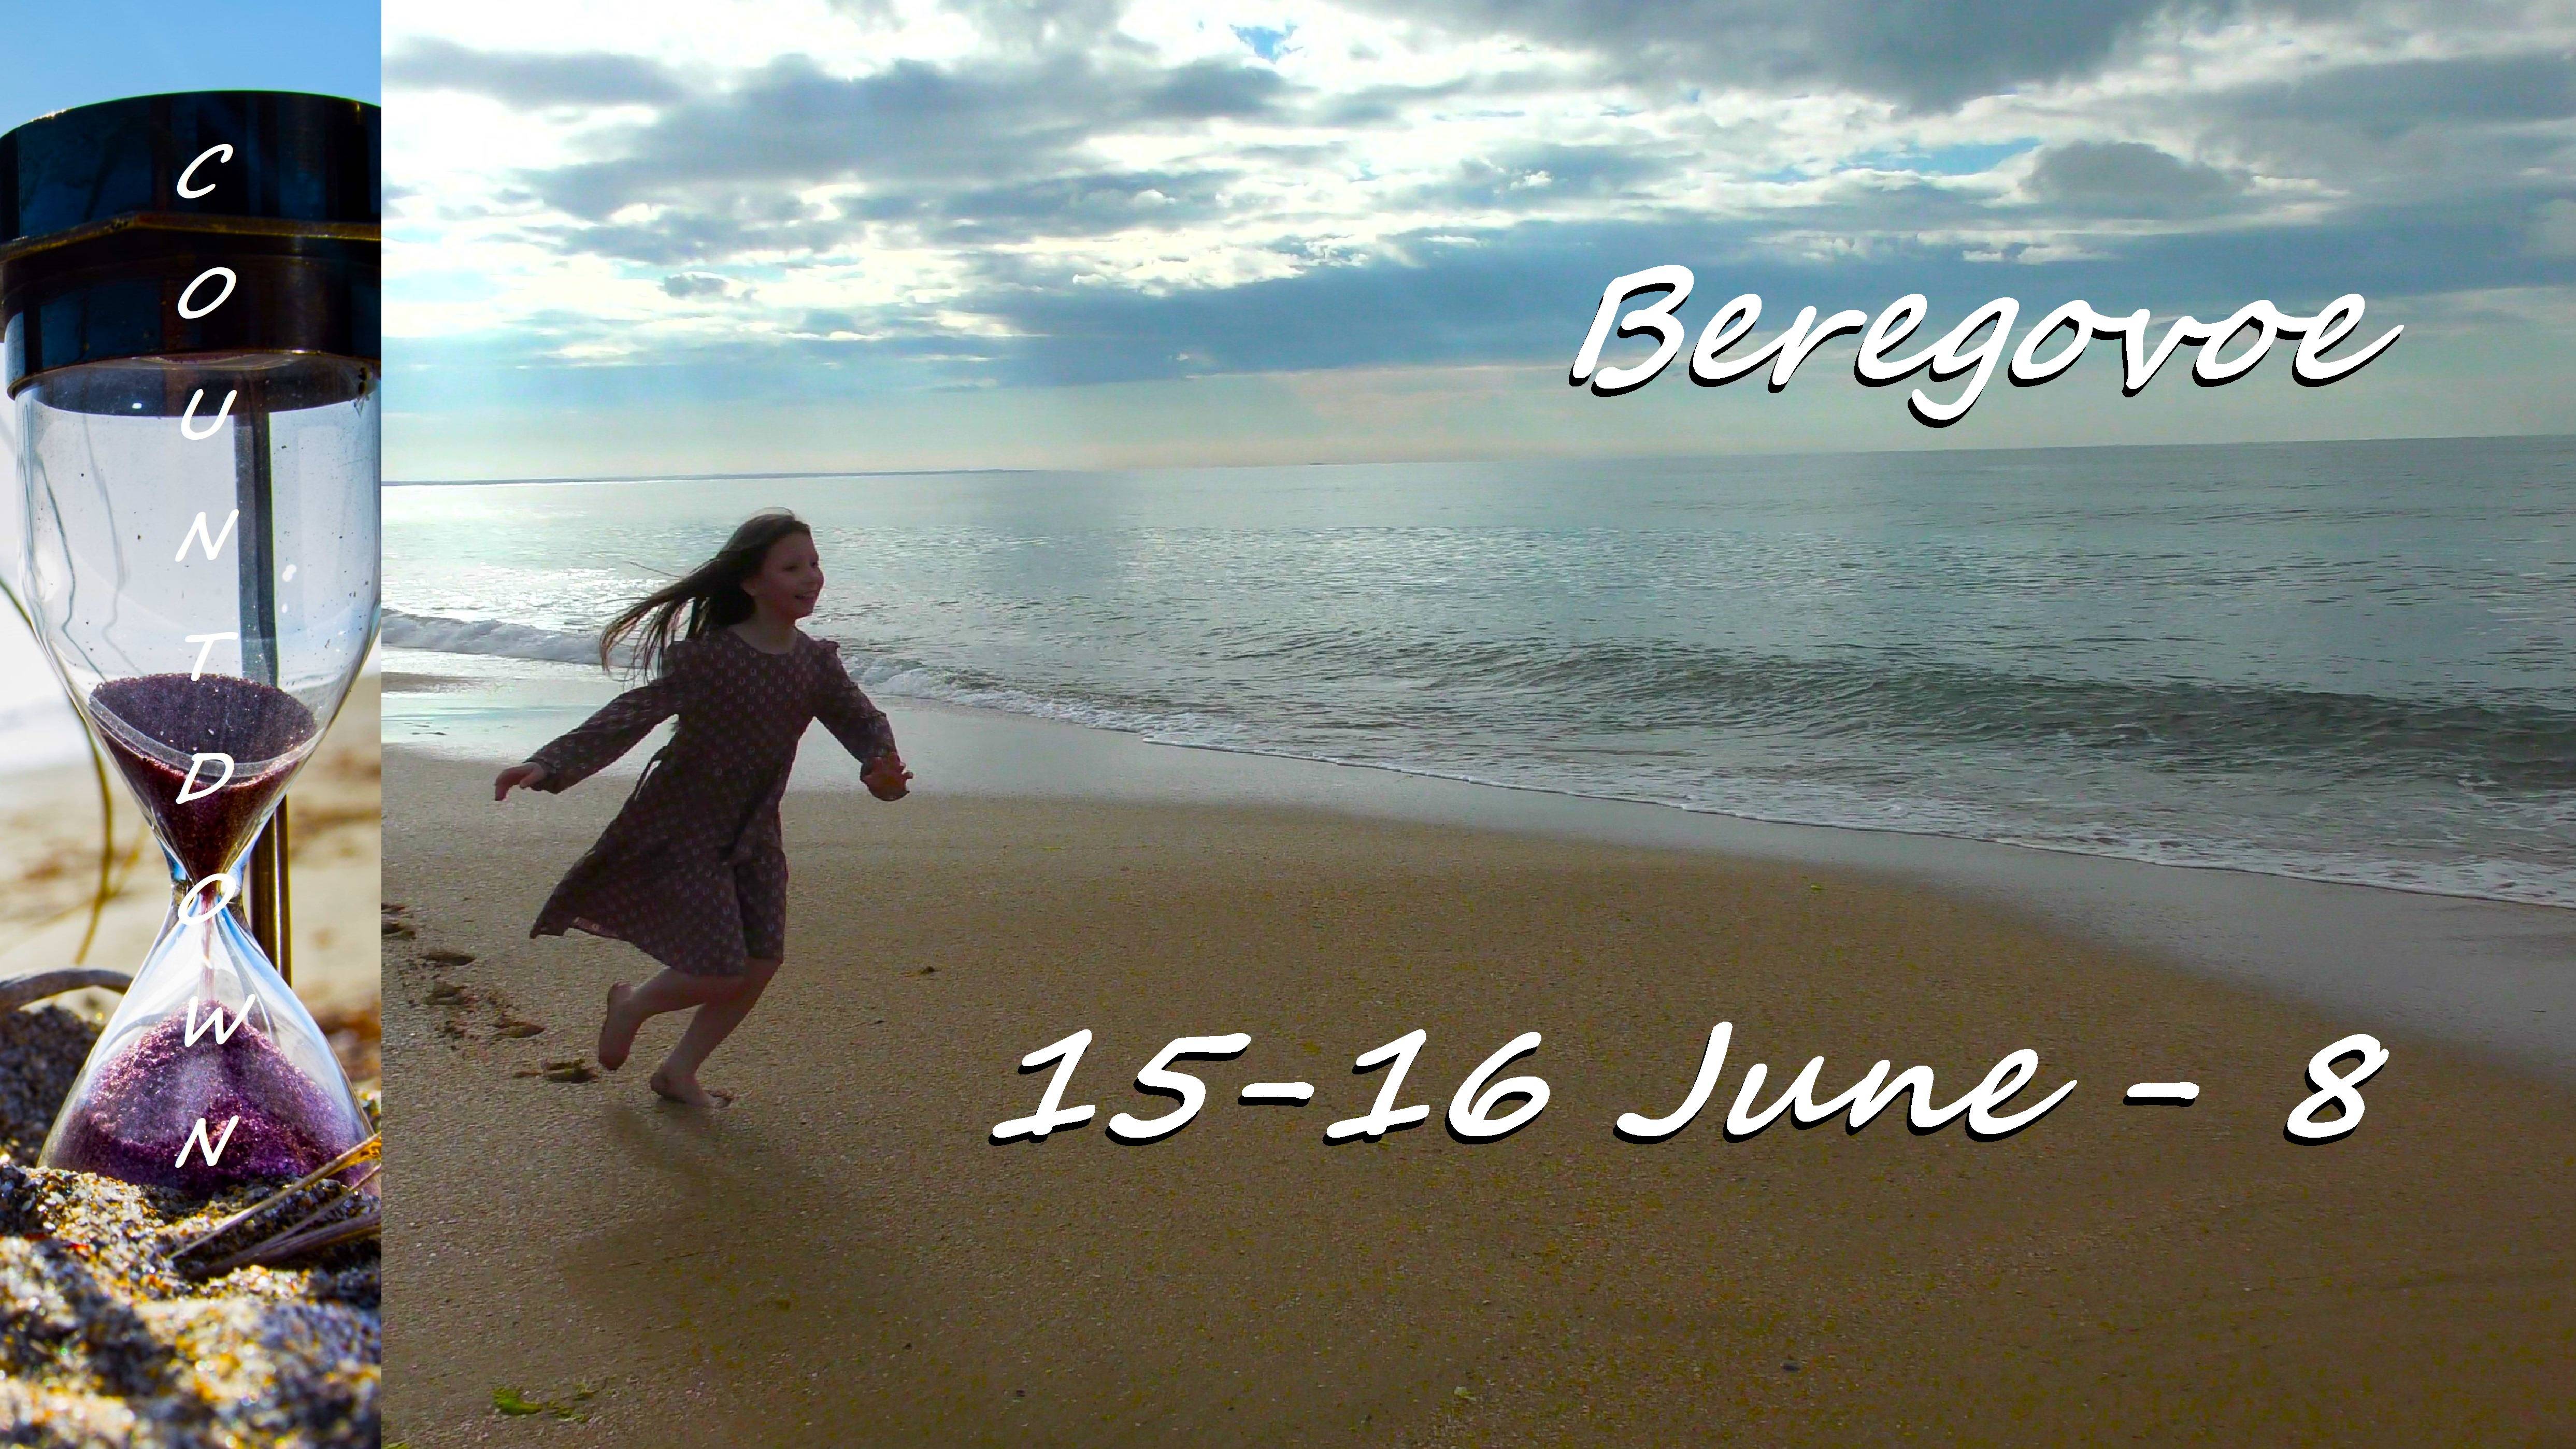 Beregovoe 15-16 June - 8